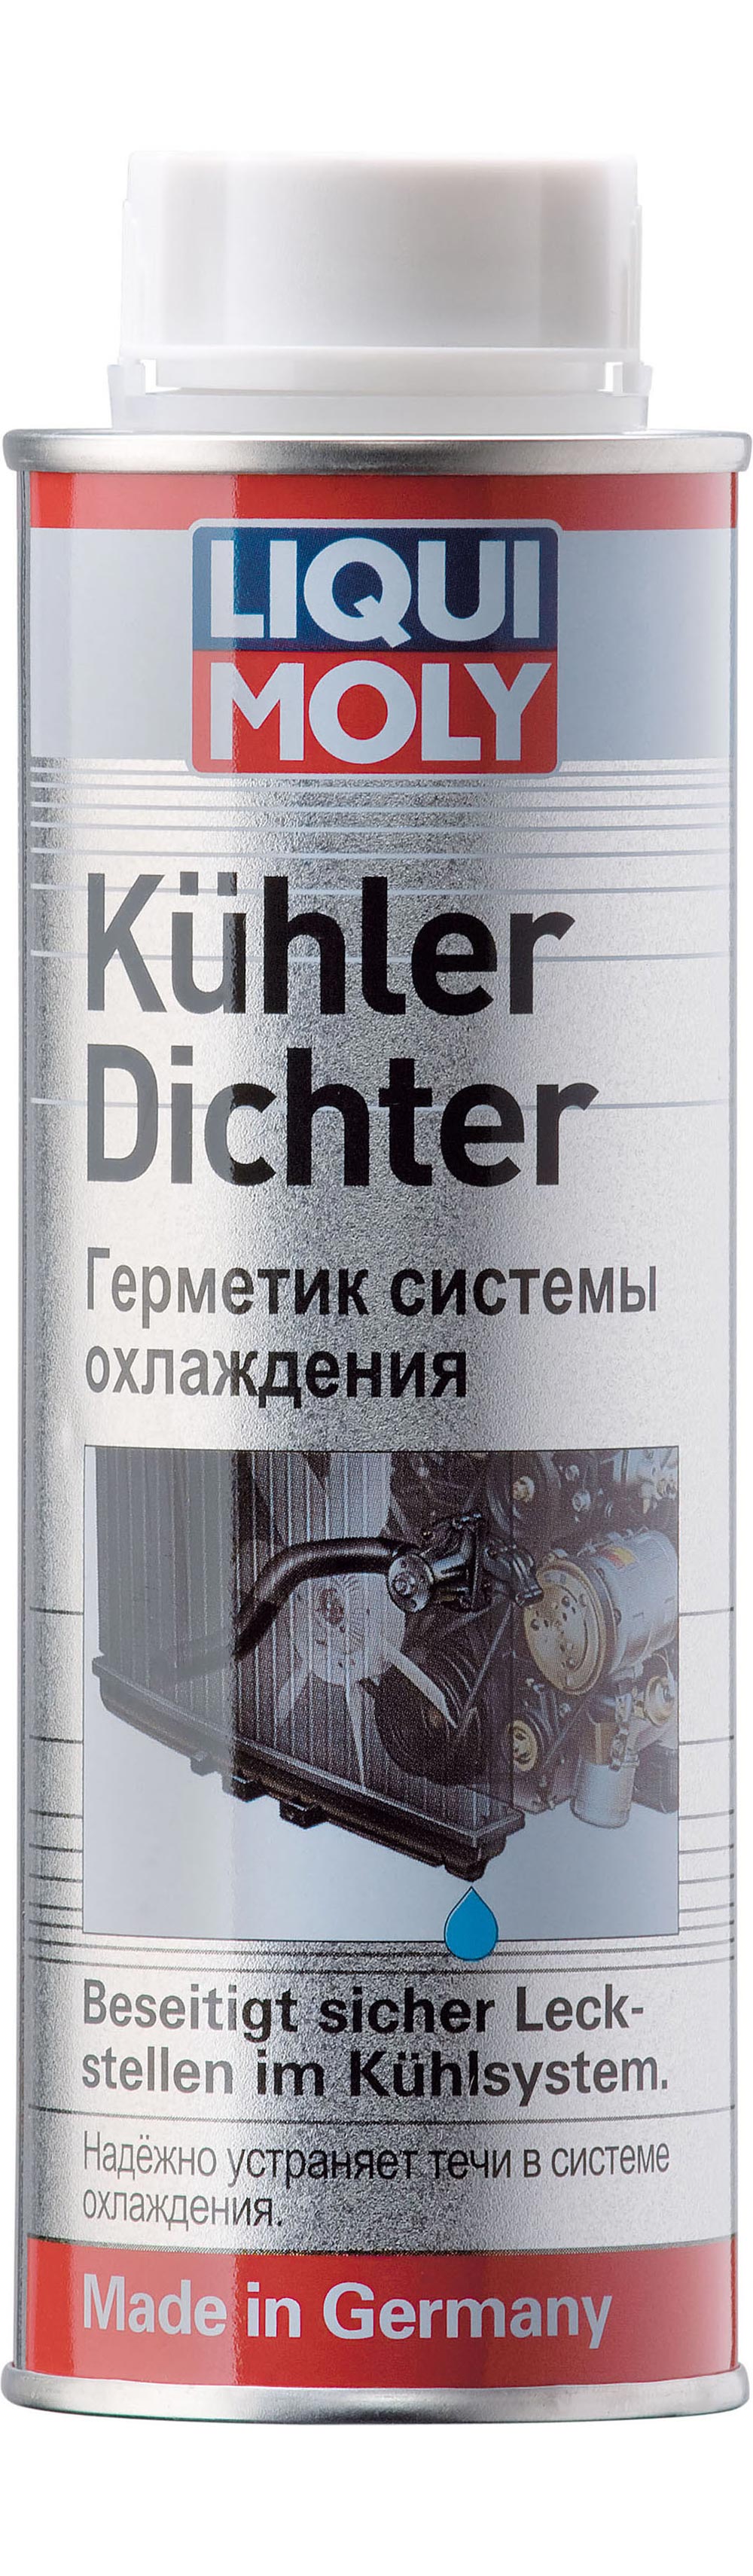 Герметик системы охлаждения Kühler-Dichter 0.250мл